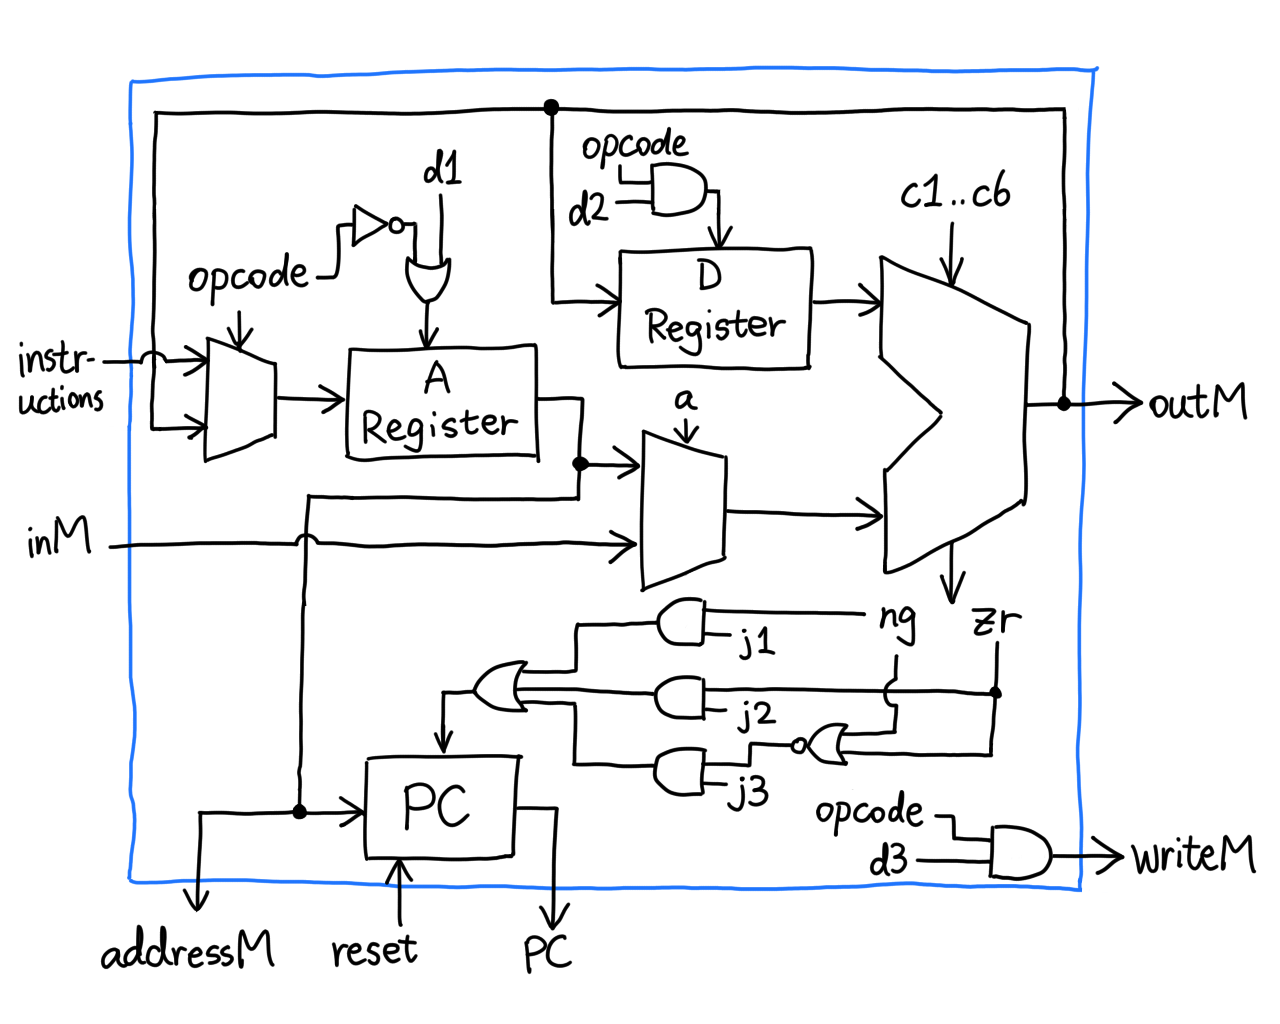 Complete diagram of CPU